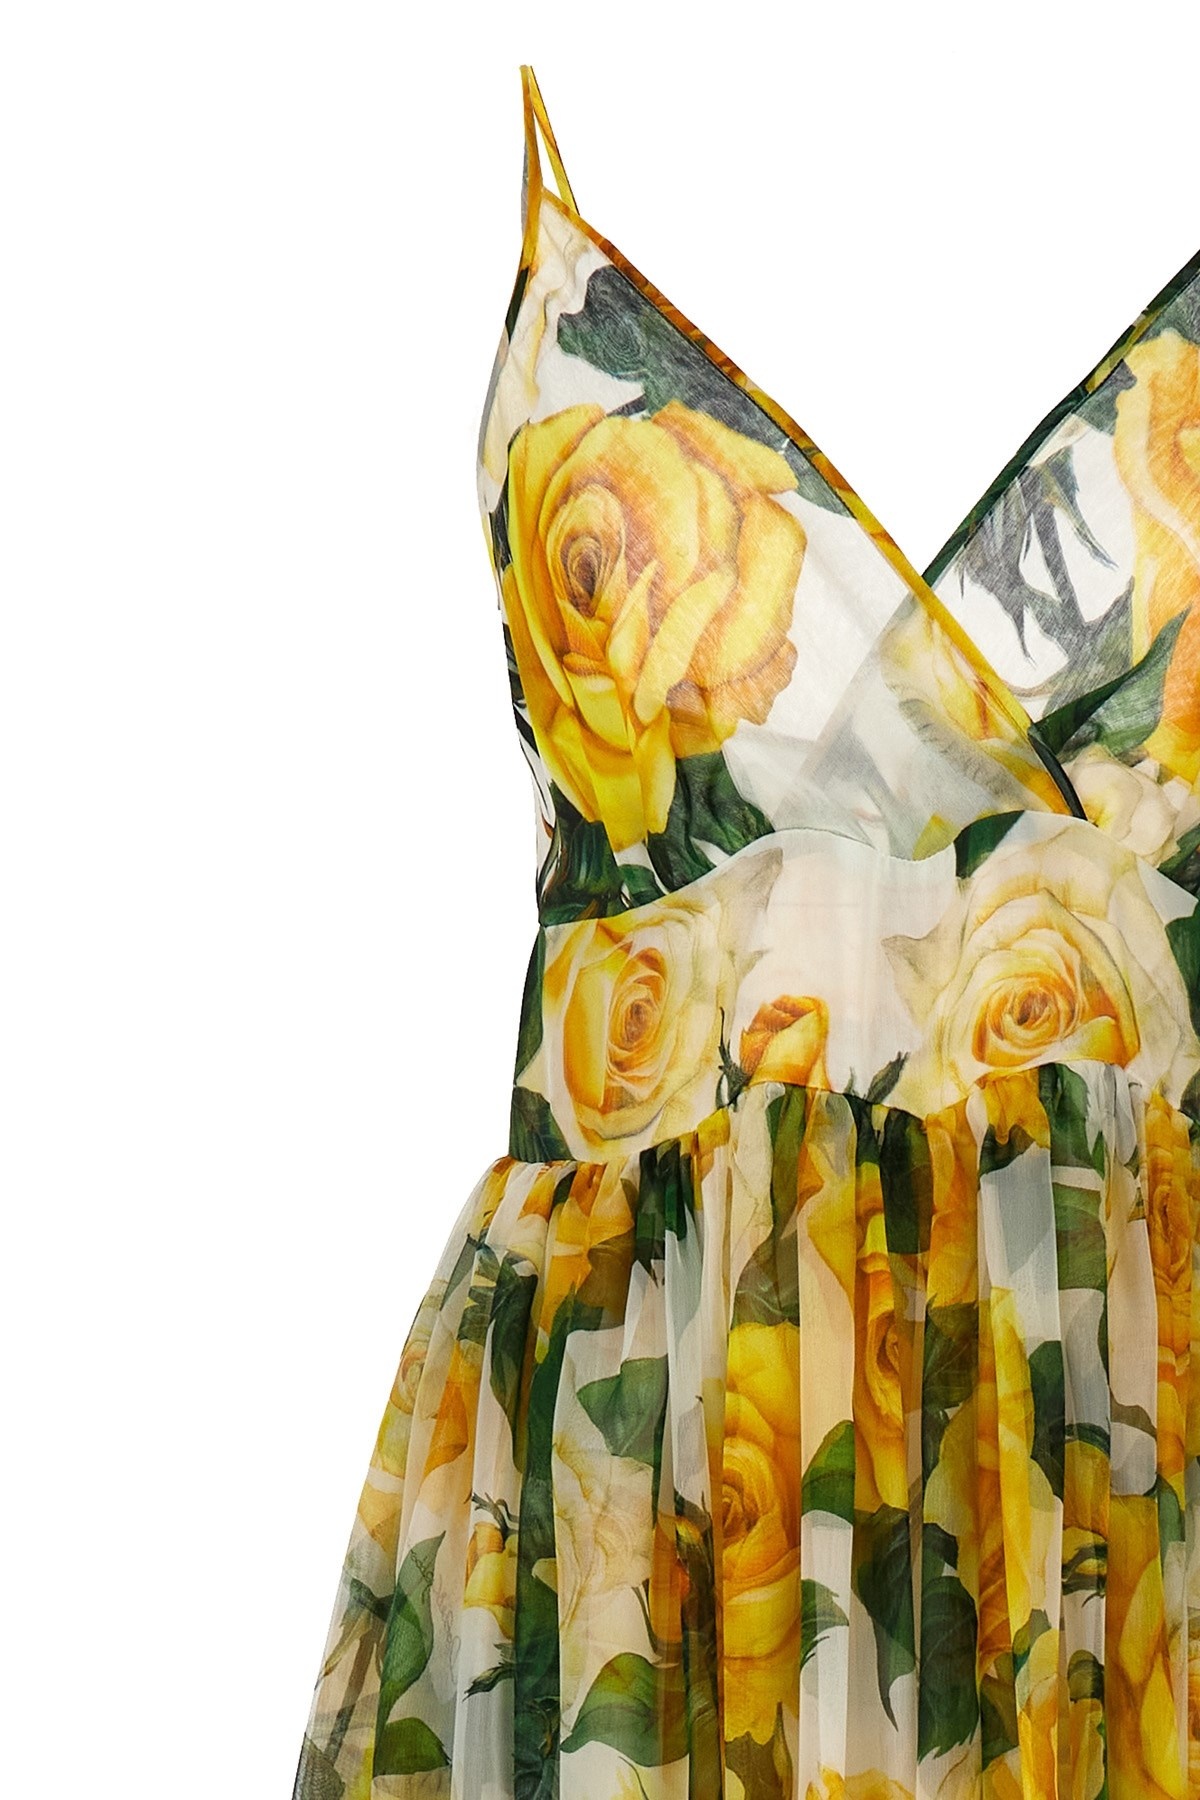 'Rose gialle' dress - 4